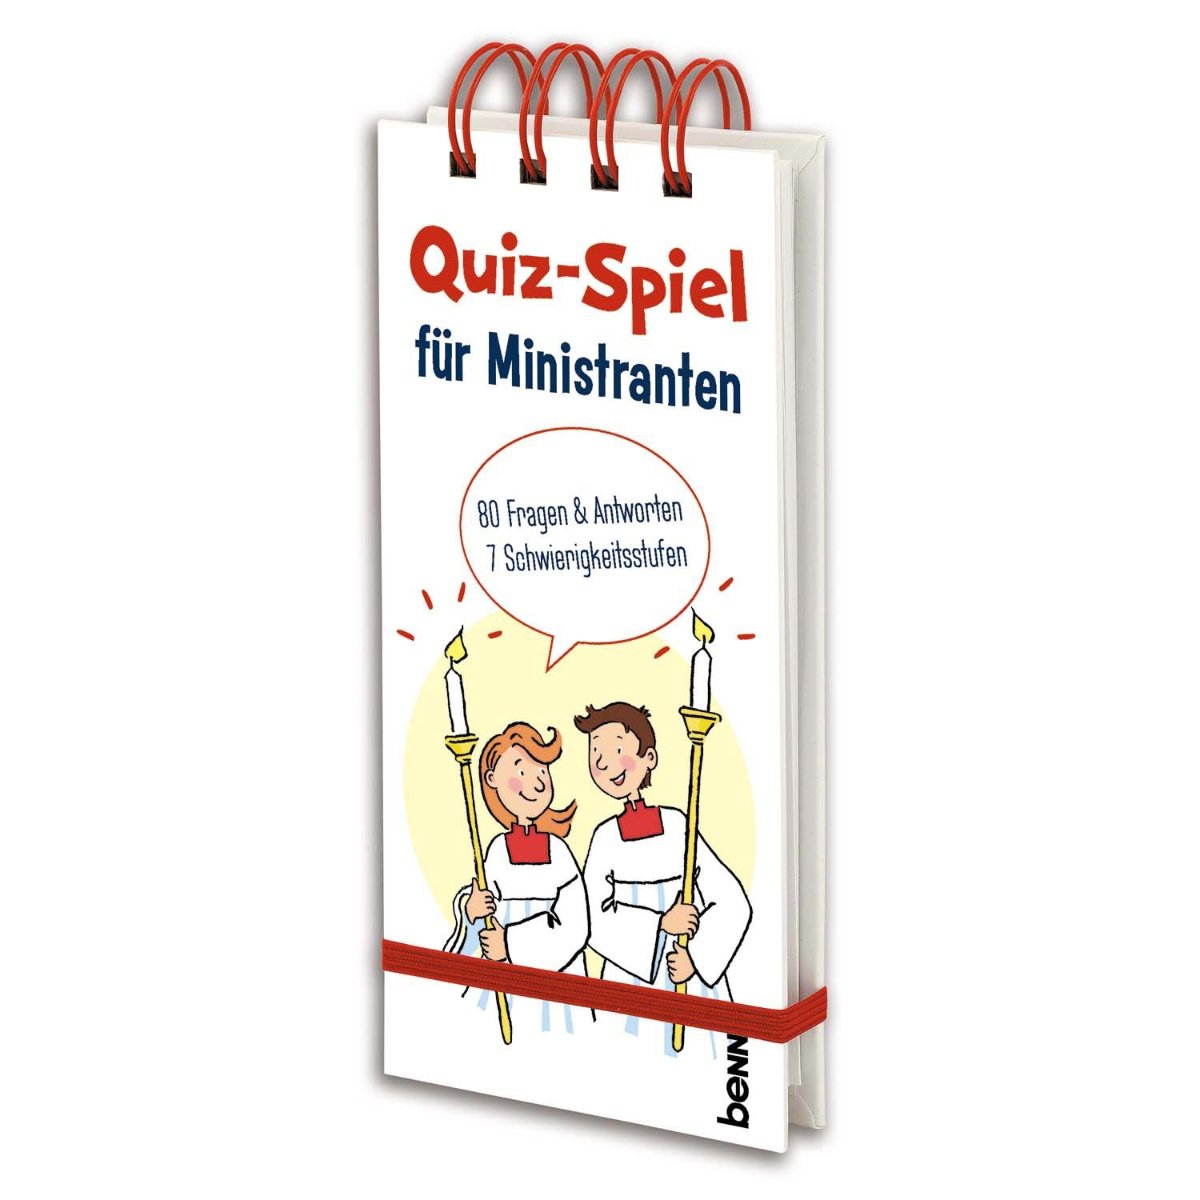 Quiz Spiel für Ministranten (c) Vivat / St. Benno Verlag